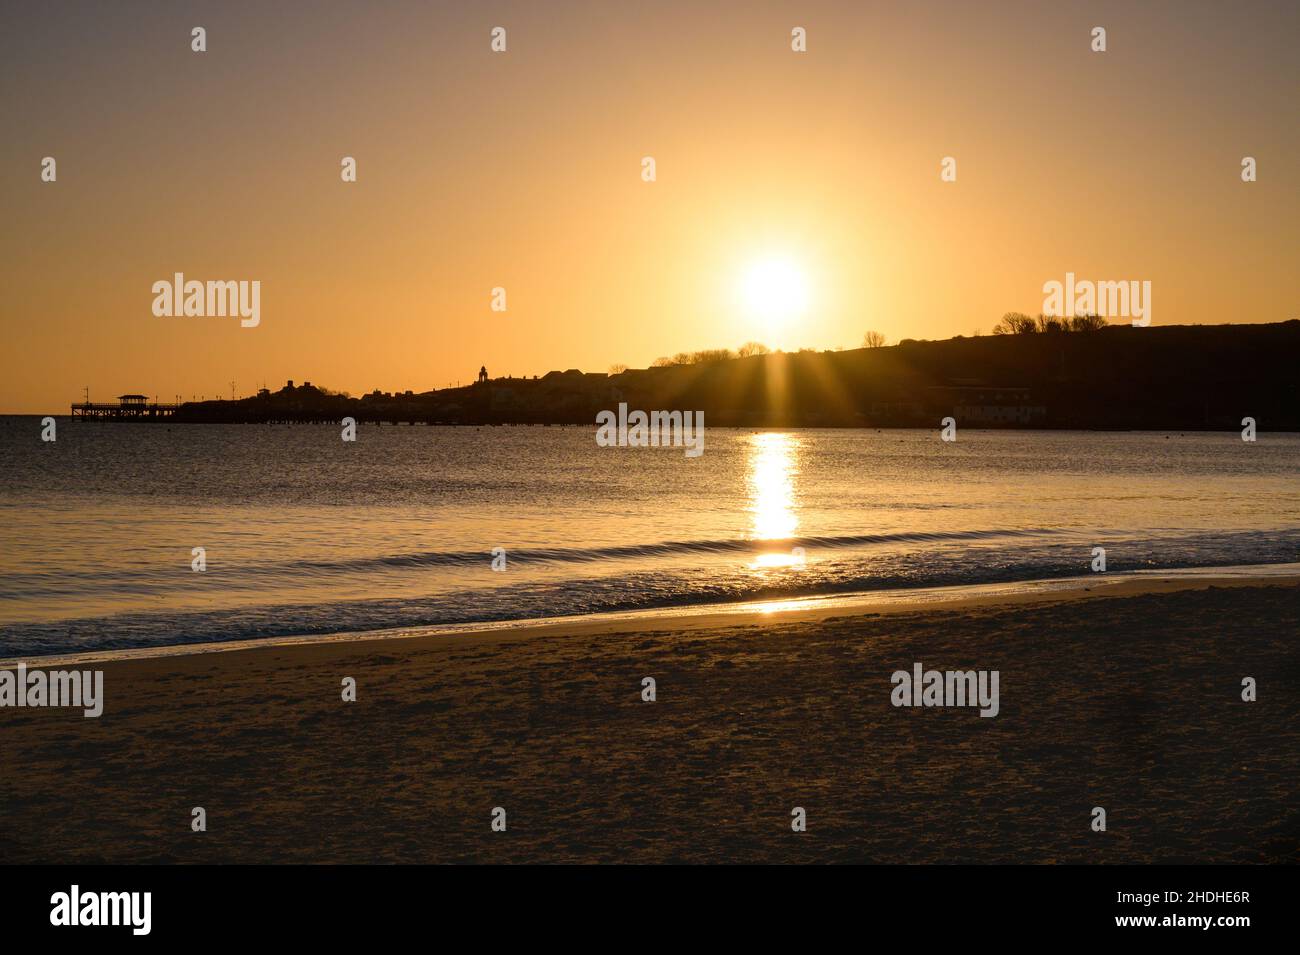 Lever du soleil à Swanage en regardant de l'autre côté de la baie avec la jetée de Swanage, le sommet des collines et la tour de l'horloge de Wellington en silhouette avec ciel clair et plage de sable. Banque D'Images